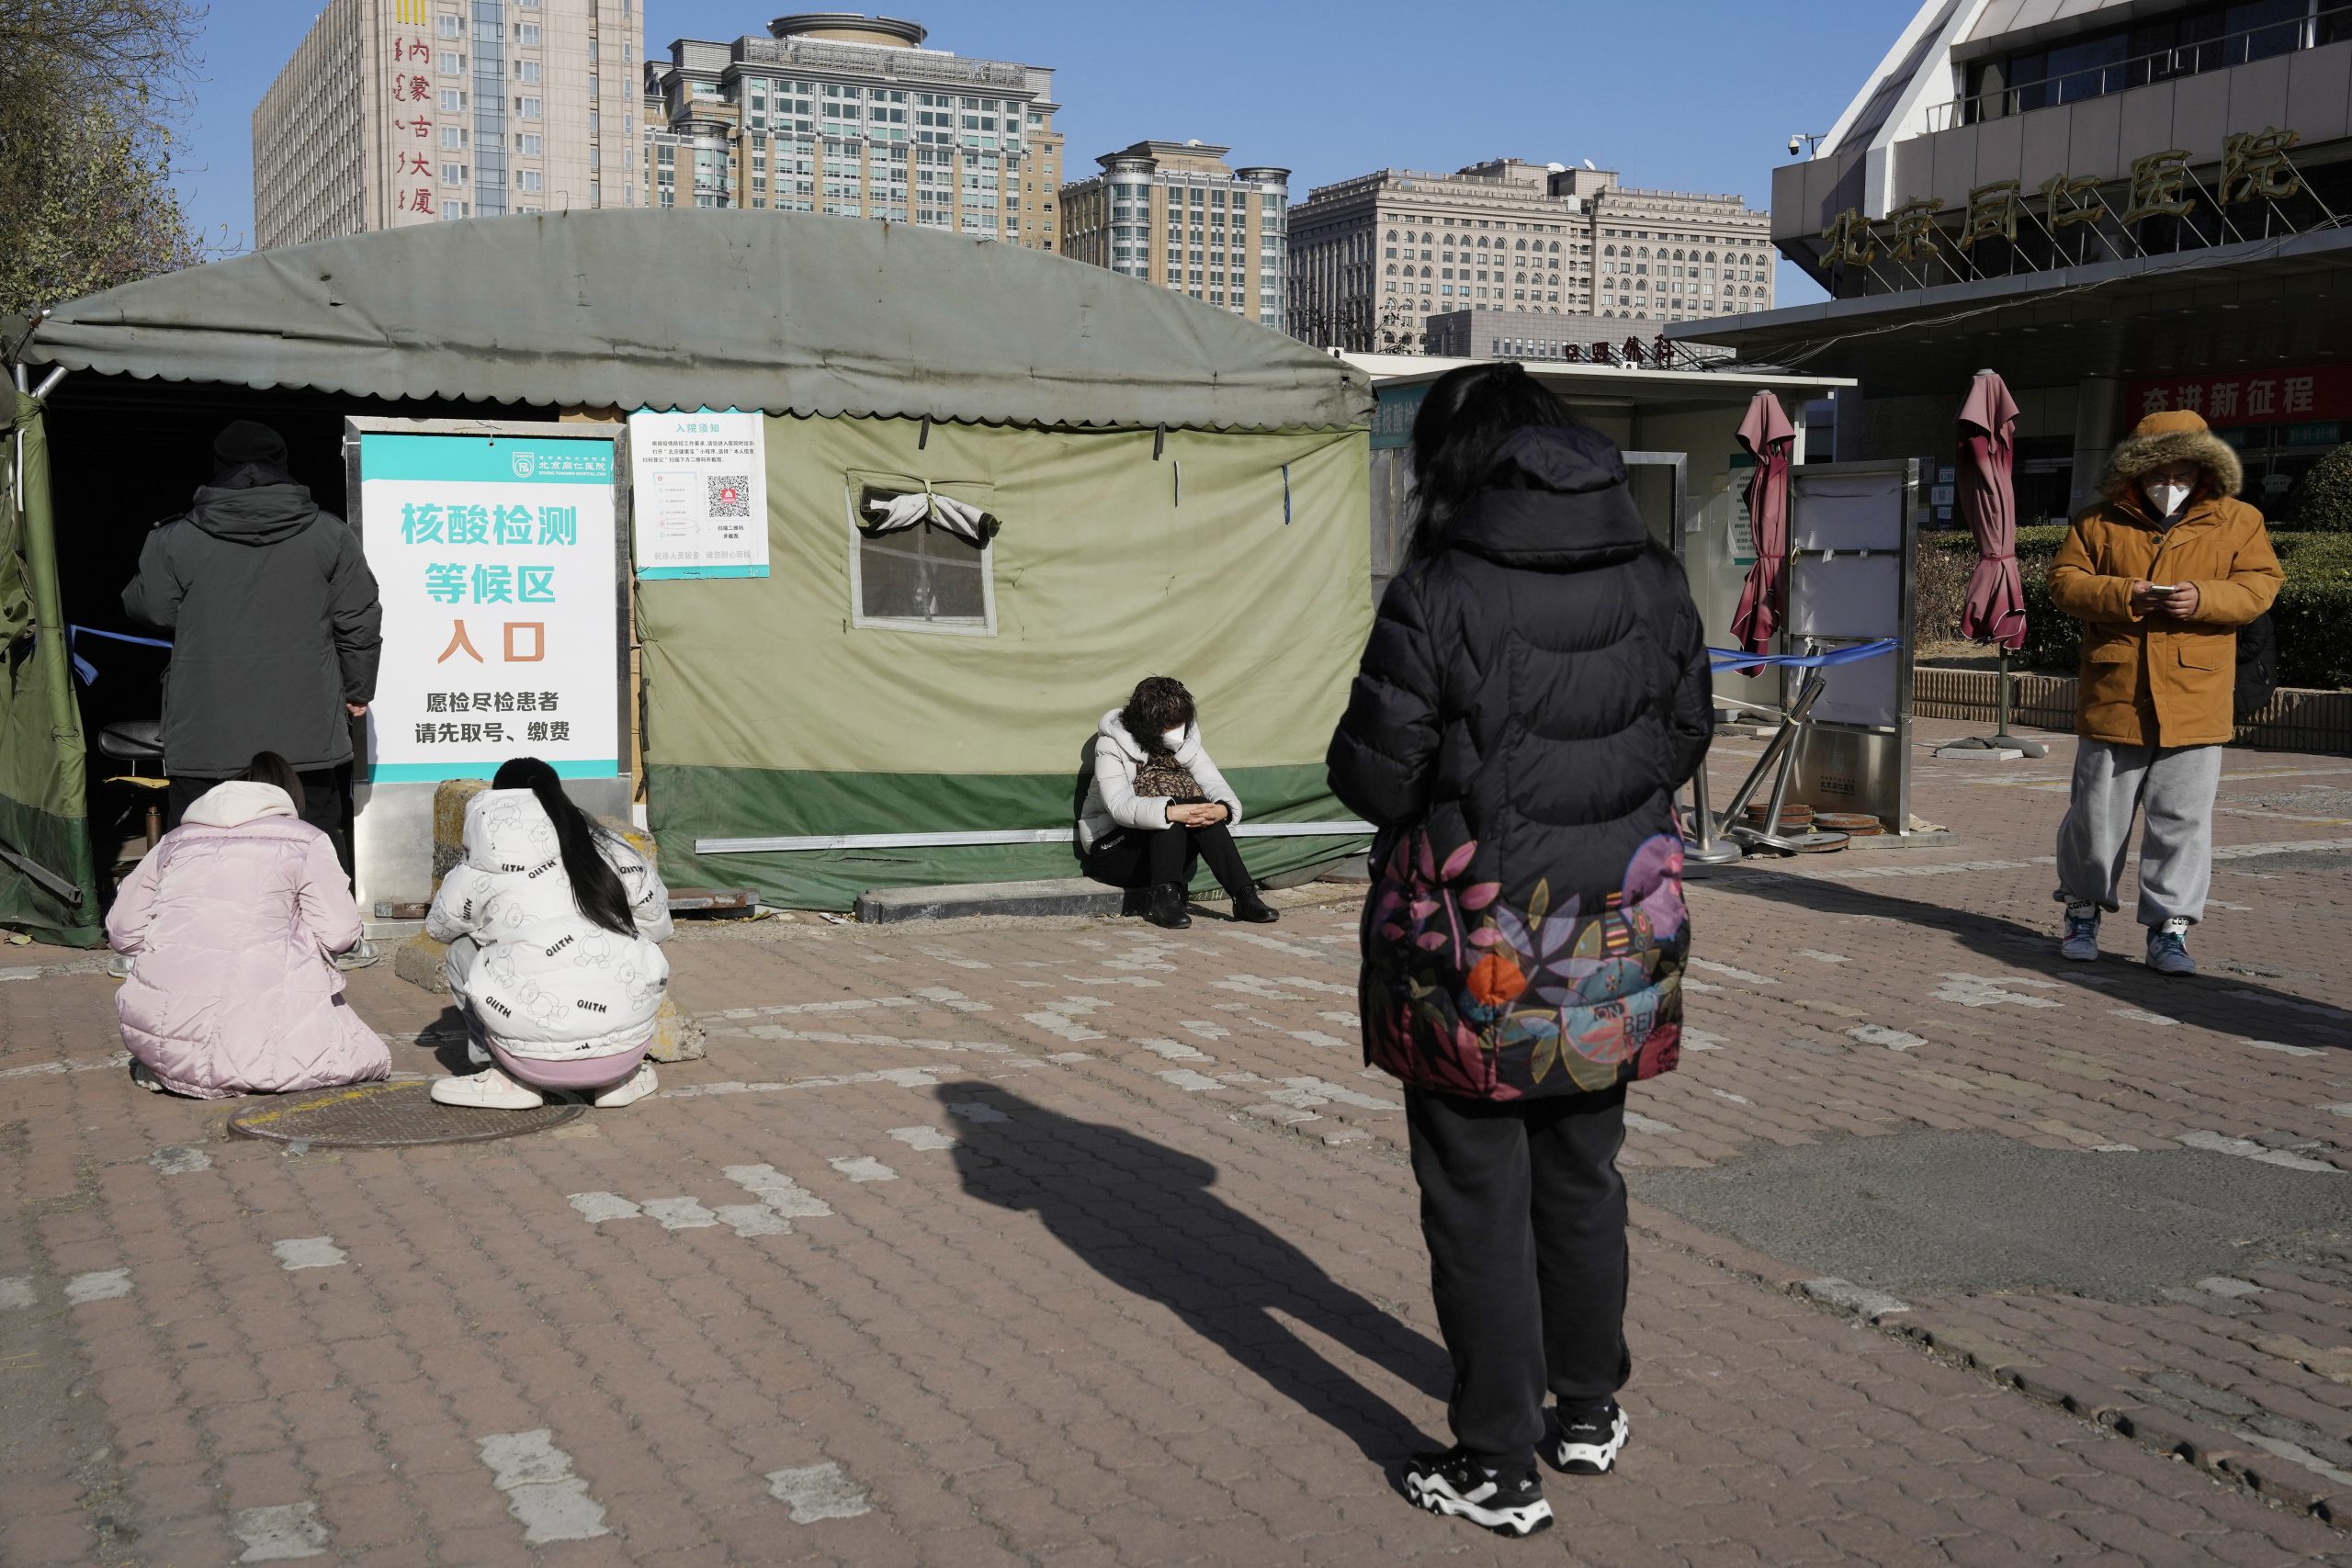 中国放宽限制  民众既欢迎又谨慎  心态很纠结  有居民抢购了可吃一年的药